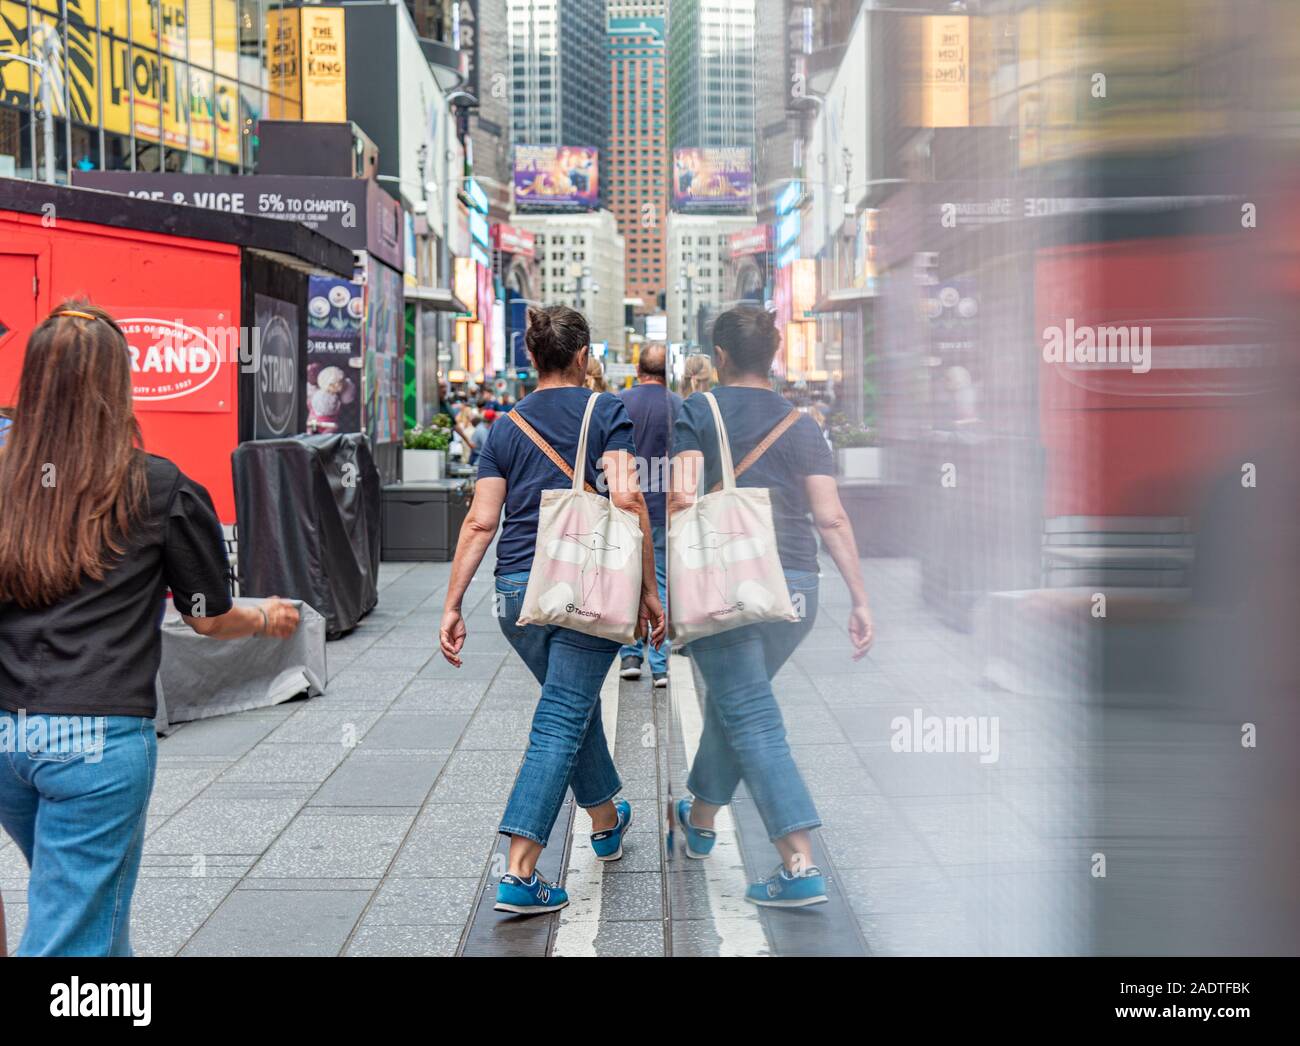 Manhattan New York Farbe Bild Spiegel bild - Spiegelbild der Menschen in Time Square Stockfoto